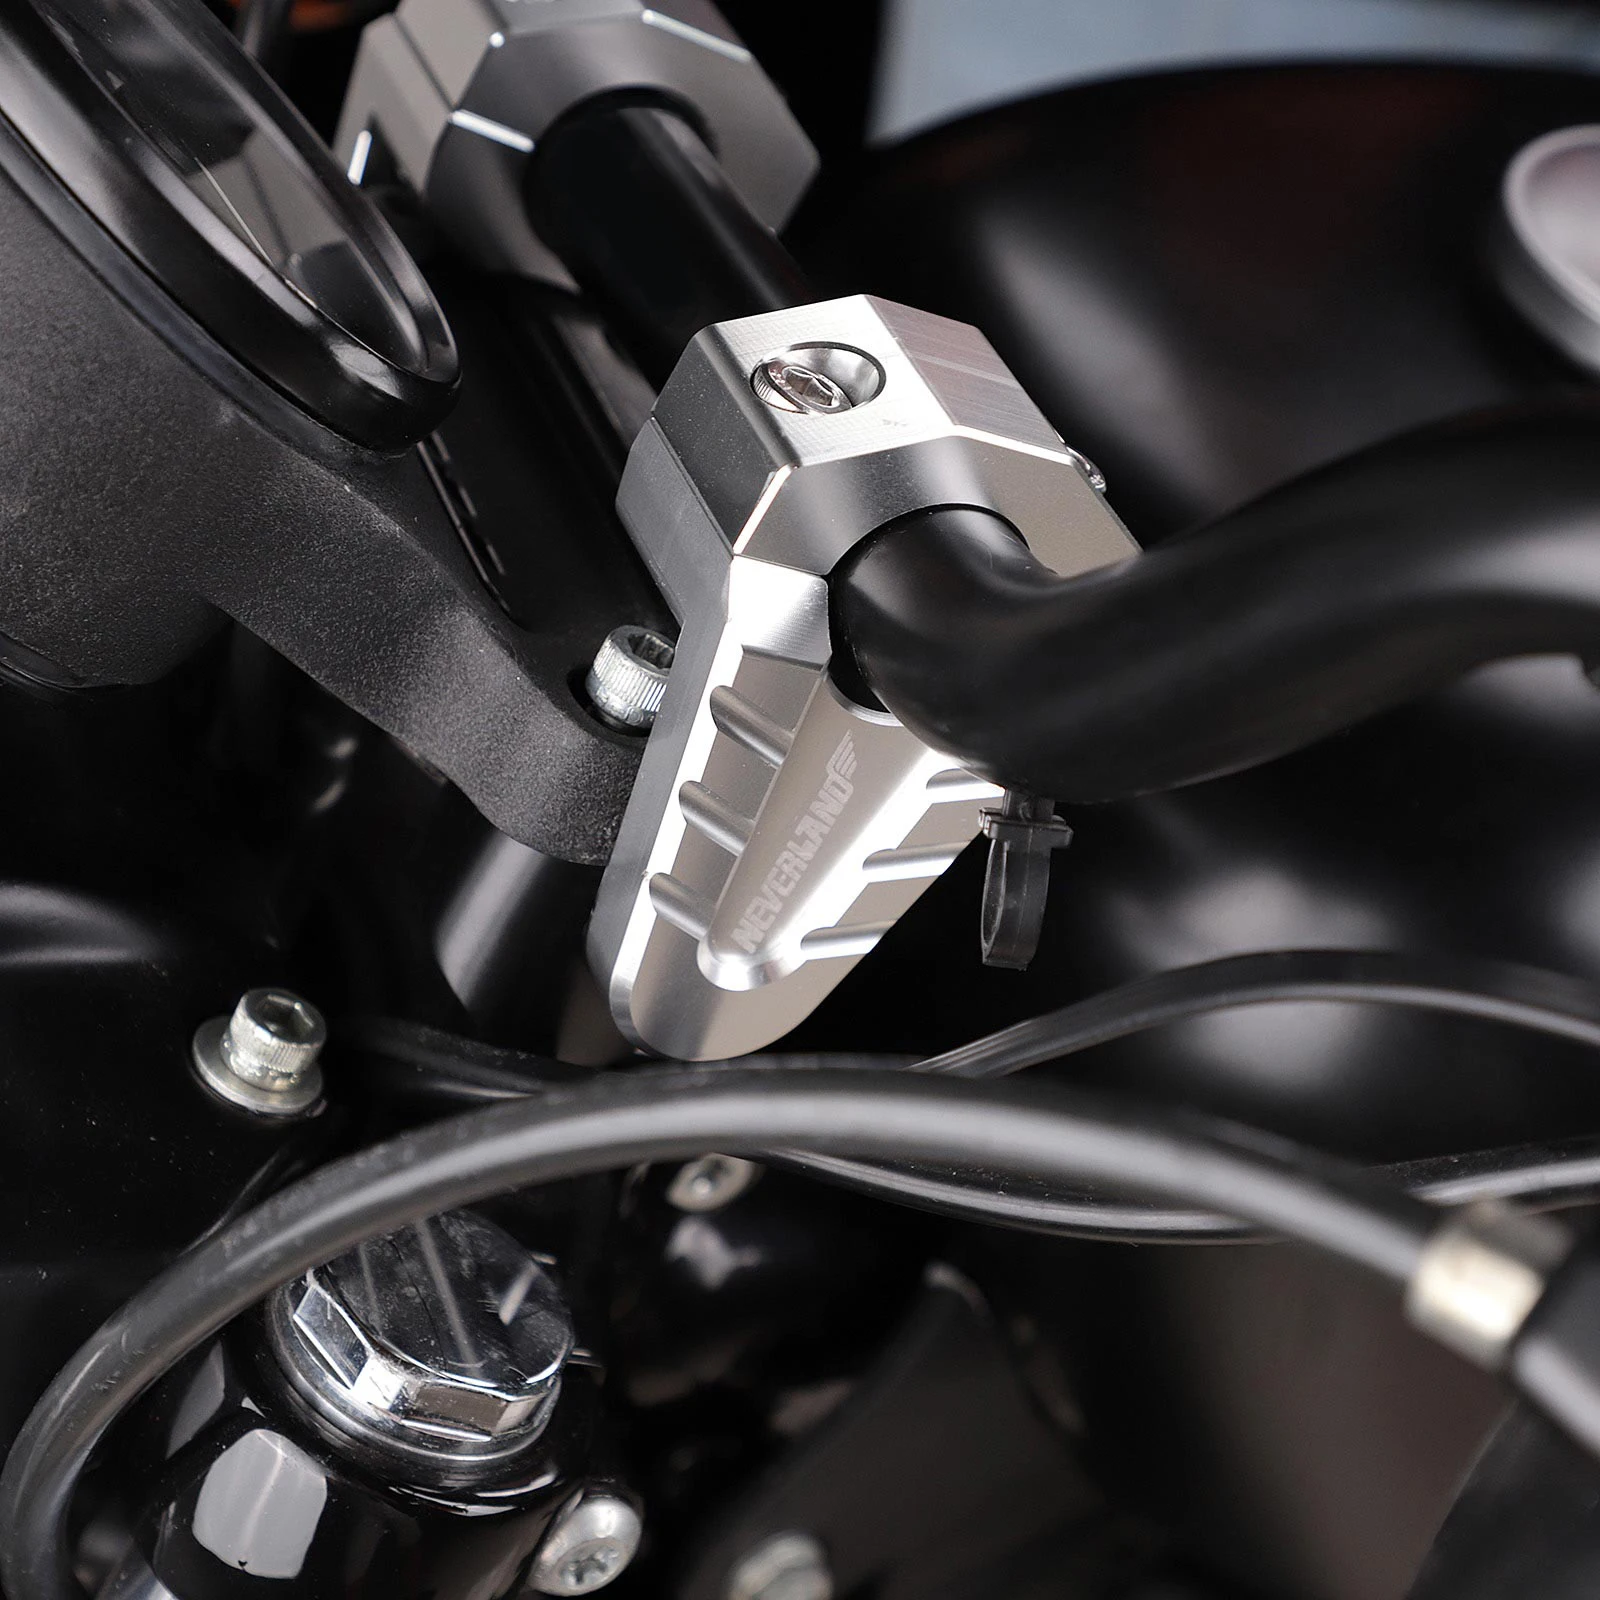 22 мм 28 мм CNC серебряный дизайн стояк Крепление-зажимы мотоцикл руль стояки передний жир бар для Yamaha BMW KTM Suzuki Honda D45